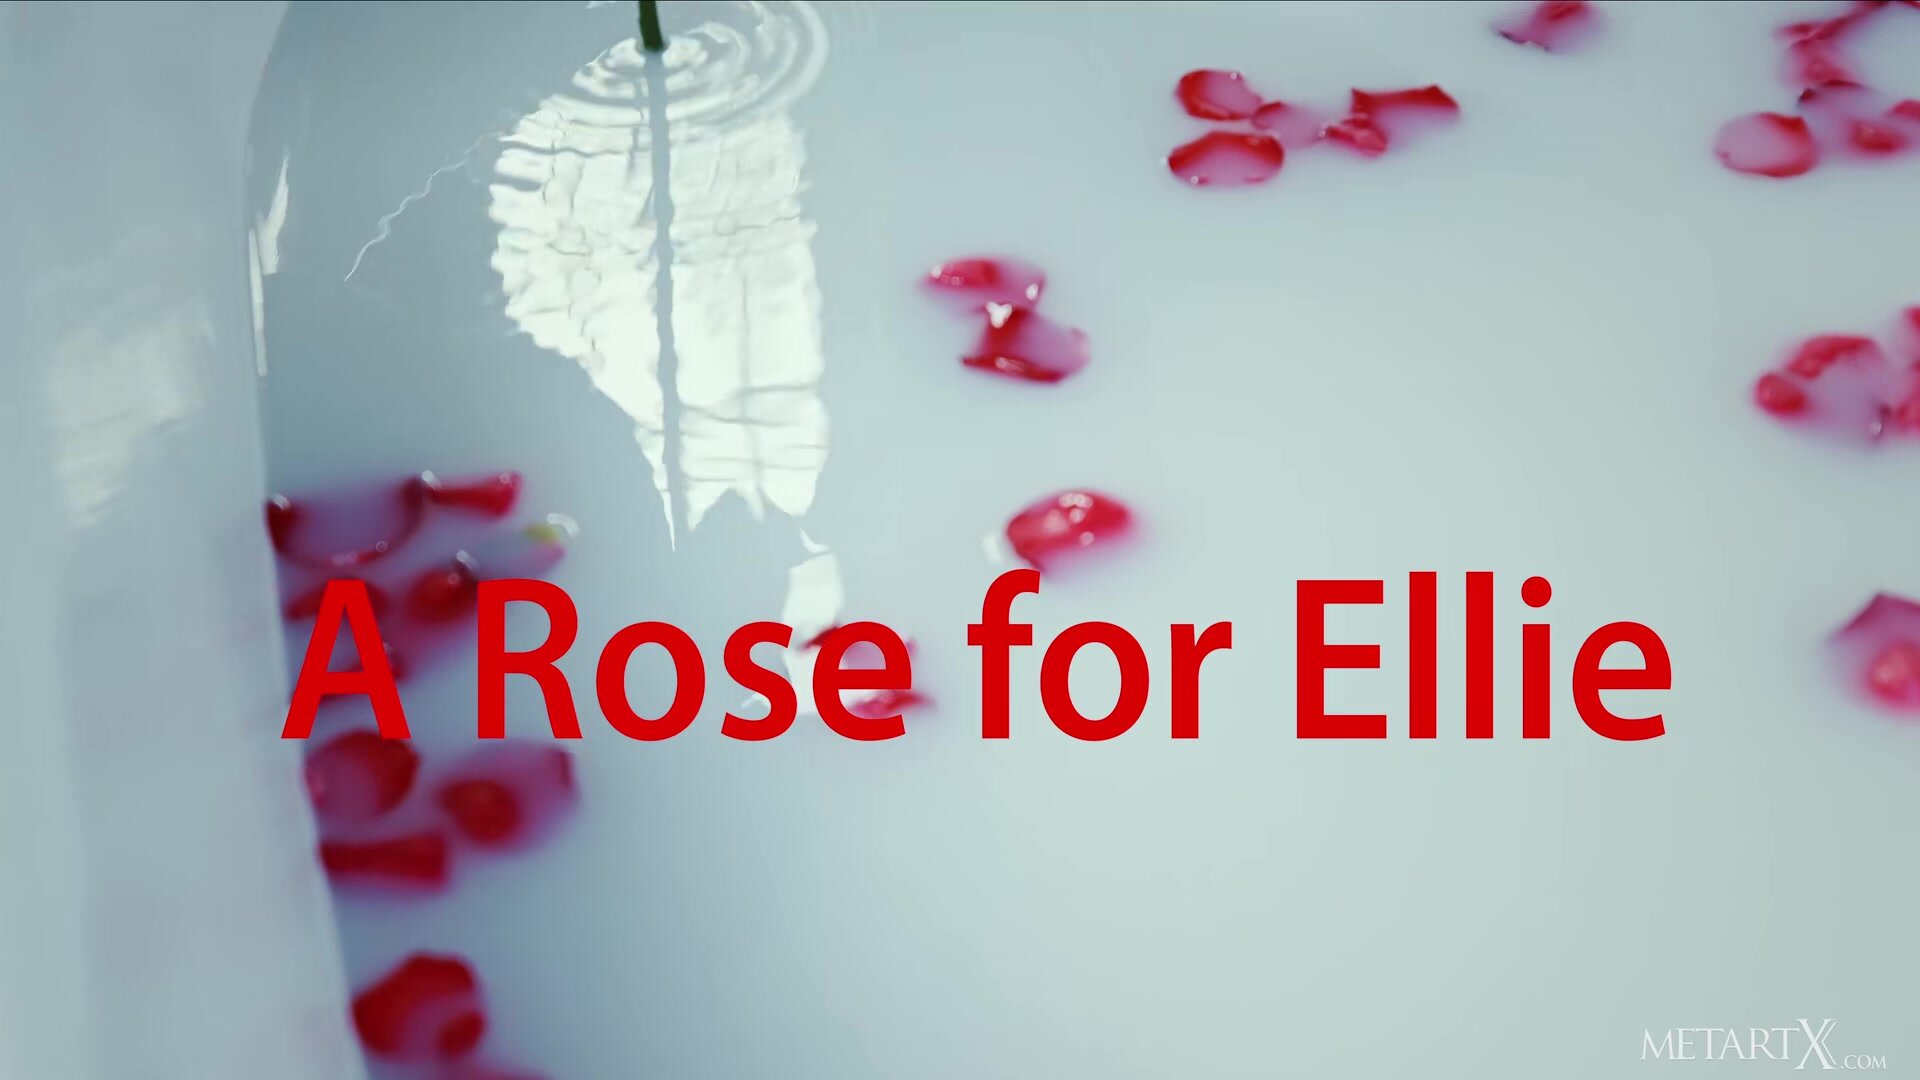 MetArtX - Ellie Luna A Rose For Ellie